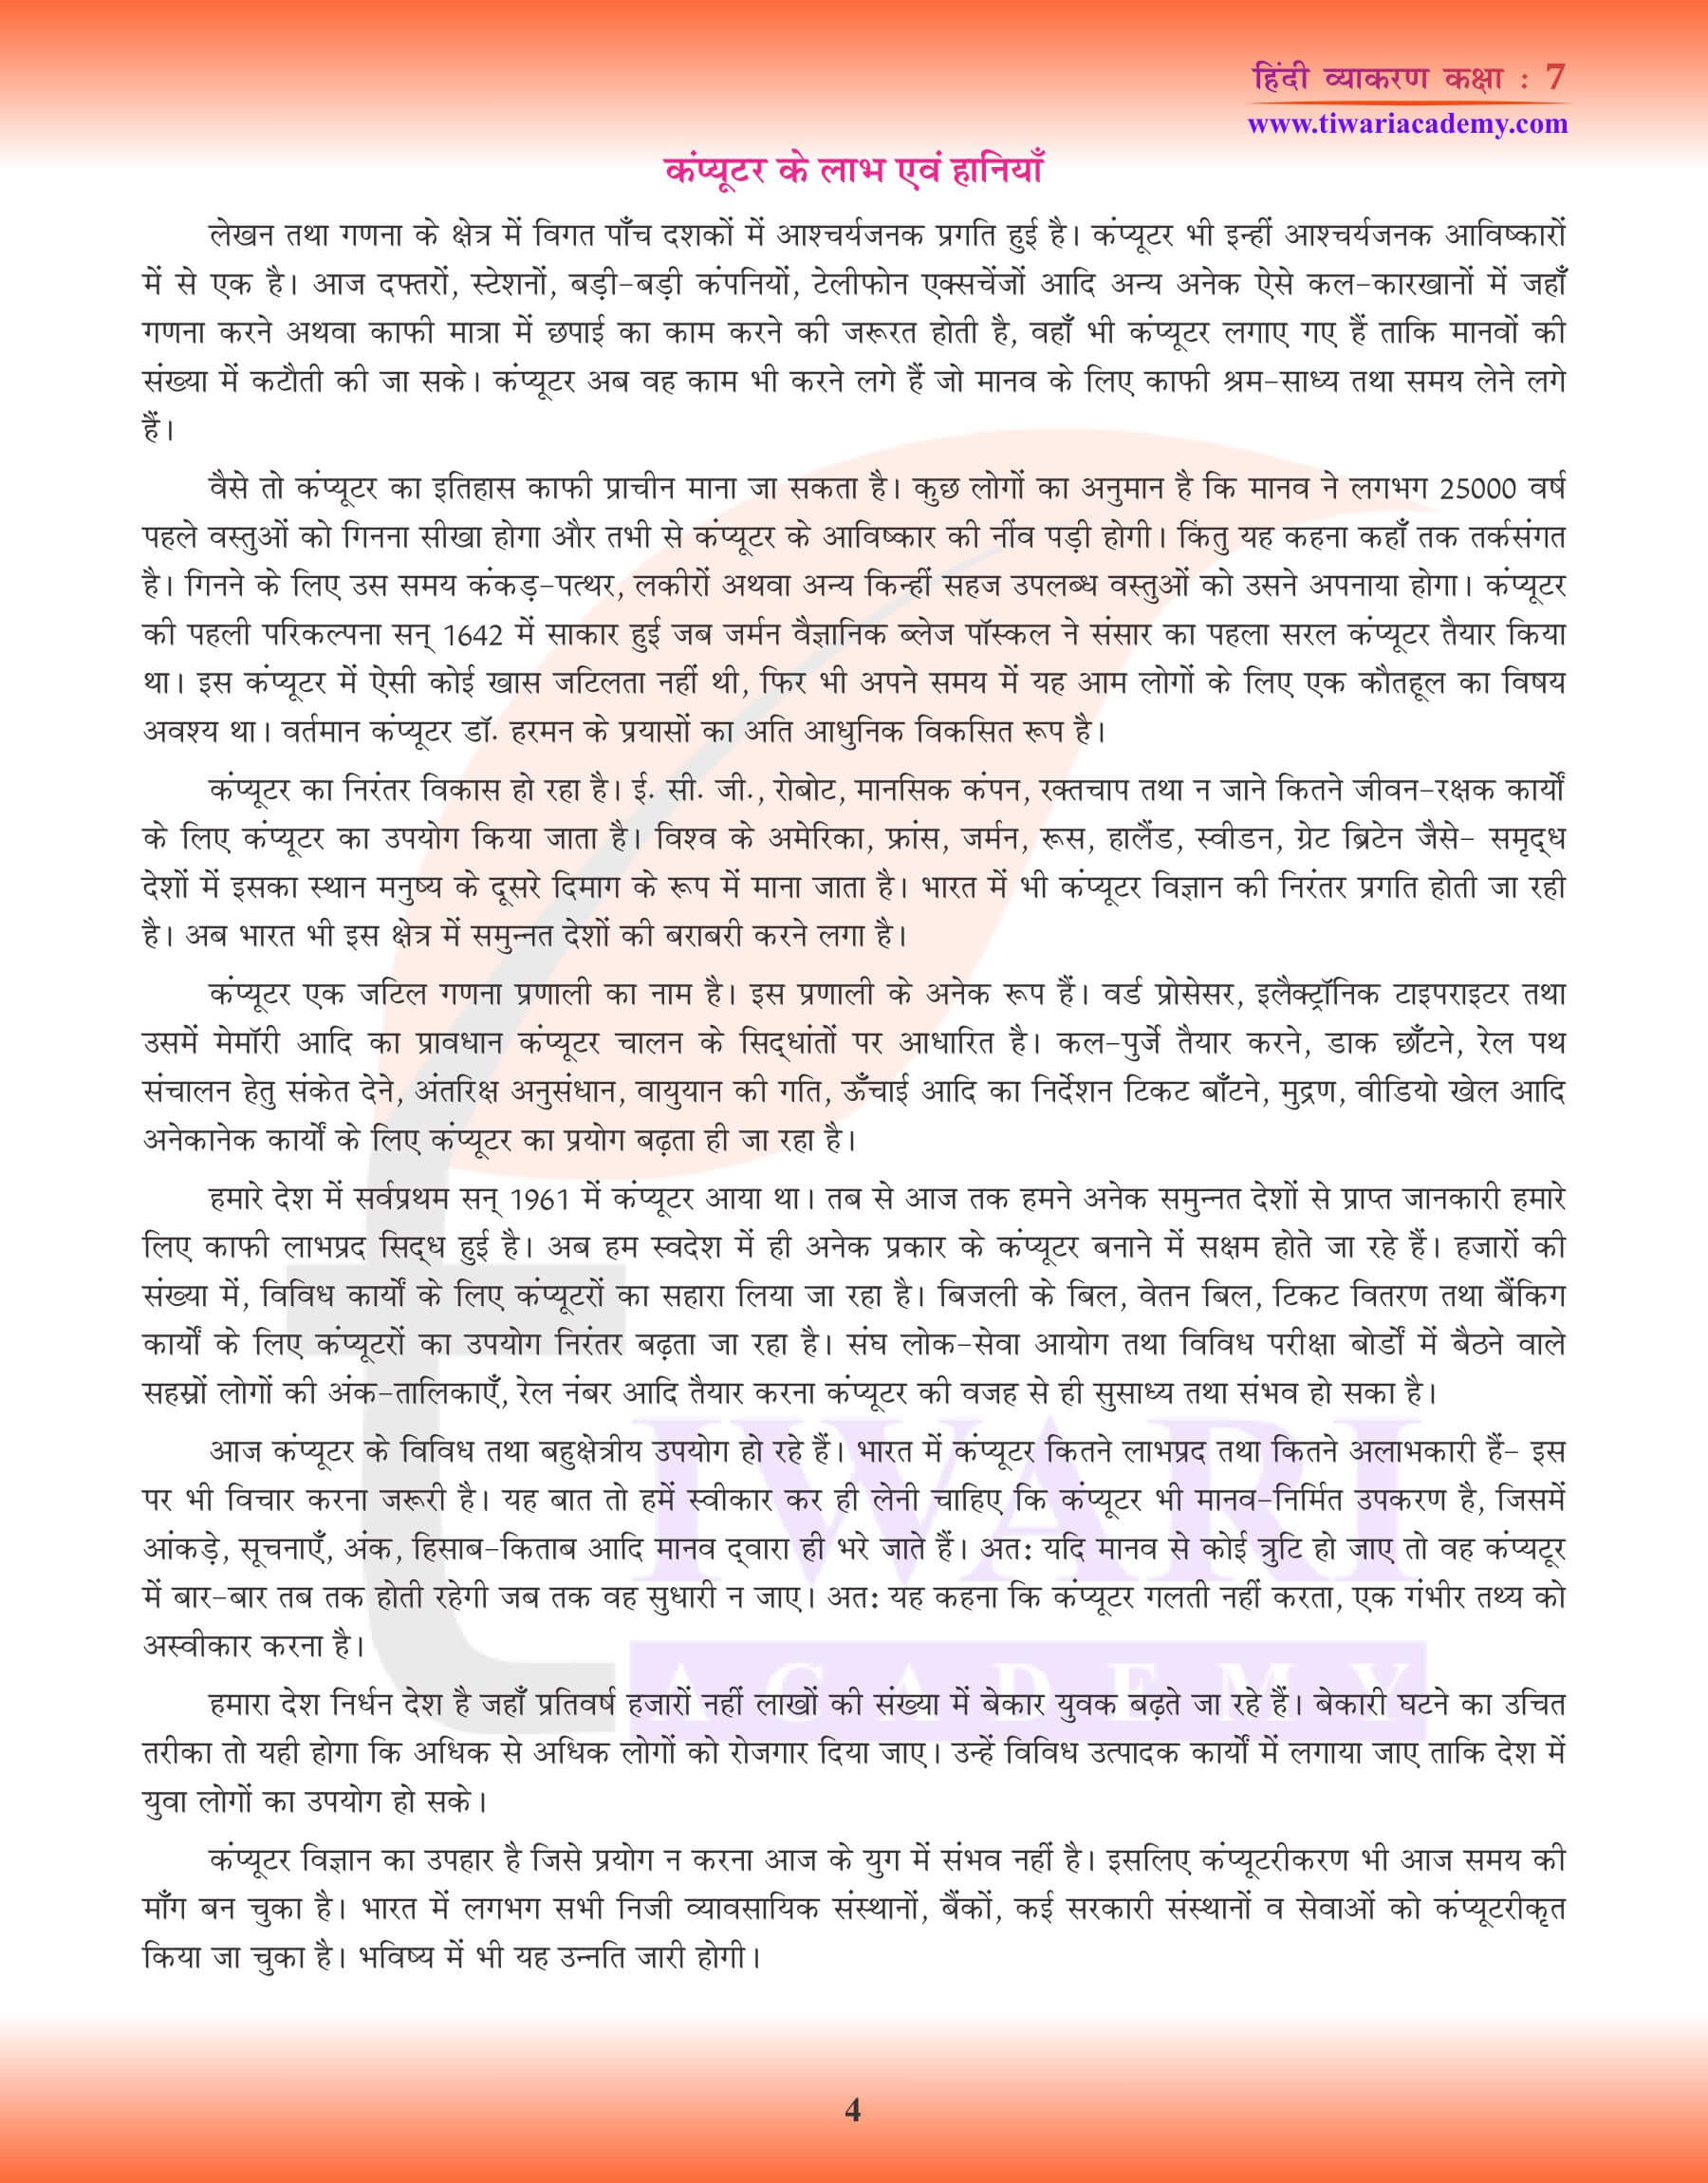 कक्षा 7 हिंदी व्याकरण में निबंध लेखन के उदाहरण